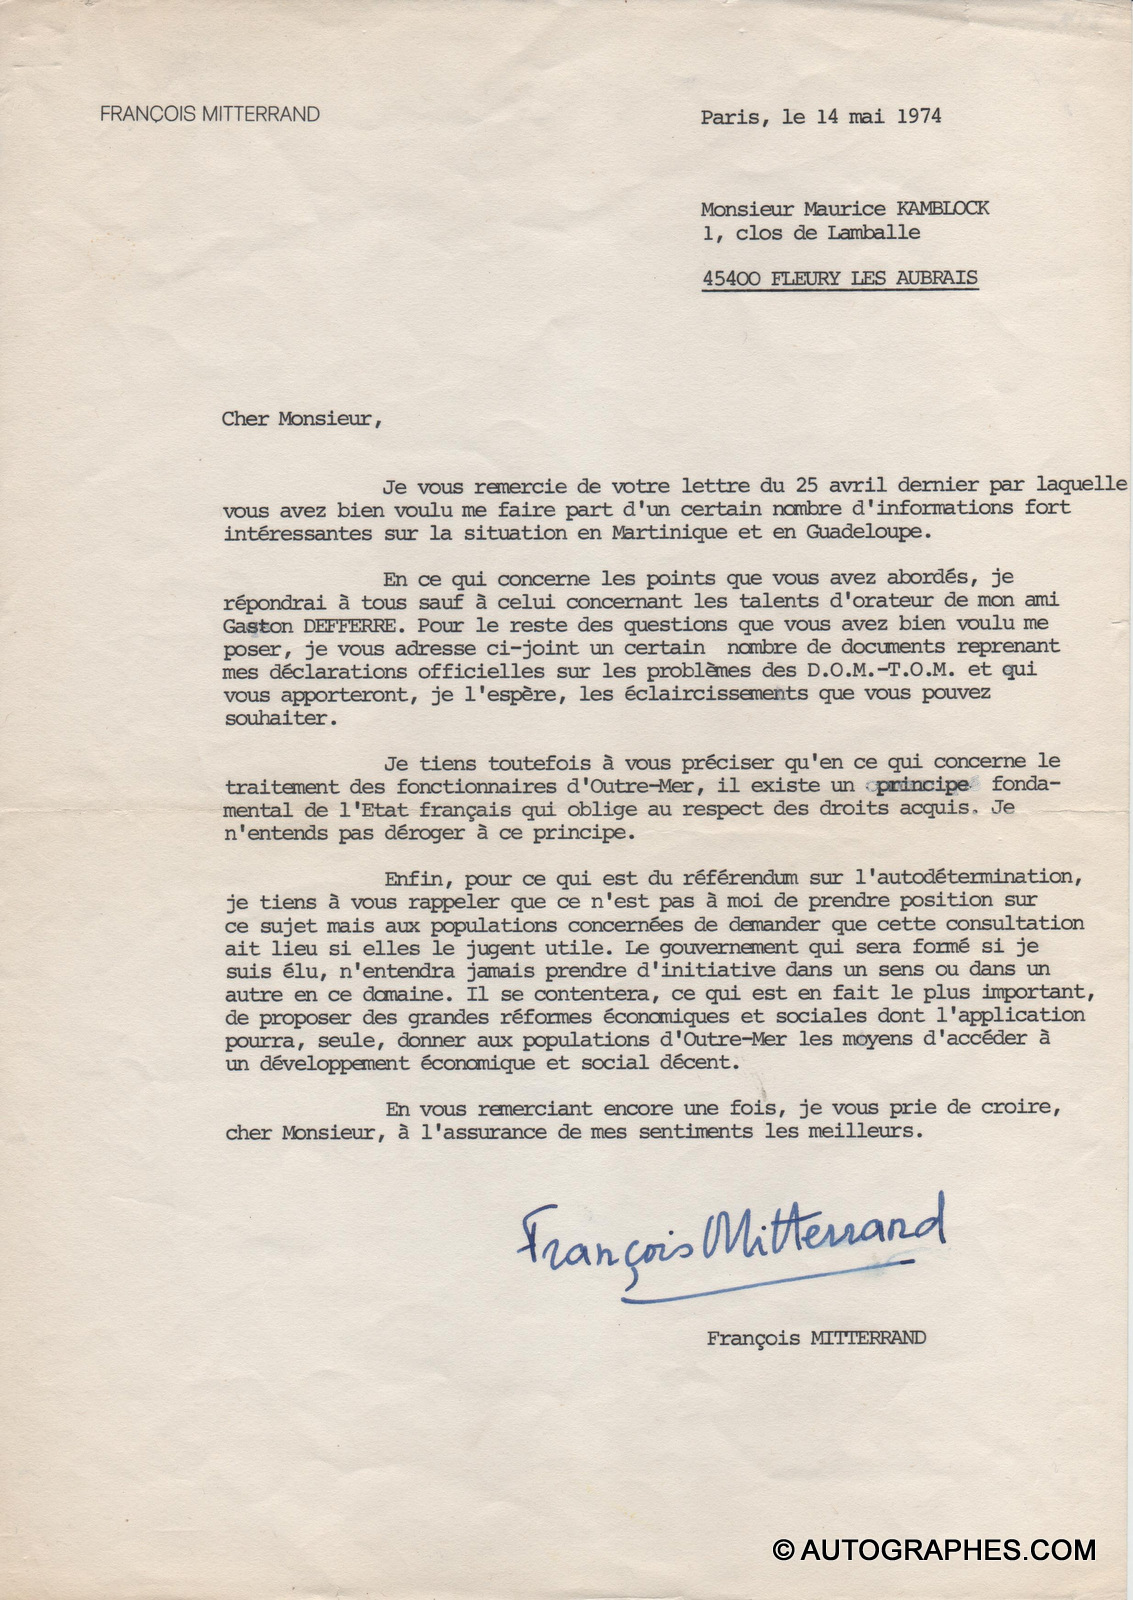 MITTERRAND François - Lettre dactylographiée signée (14 mai 1974)